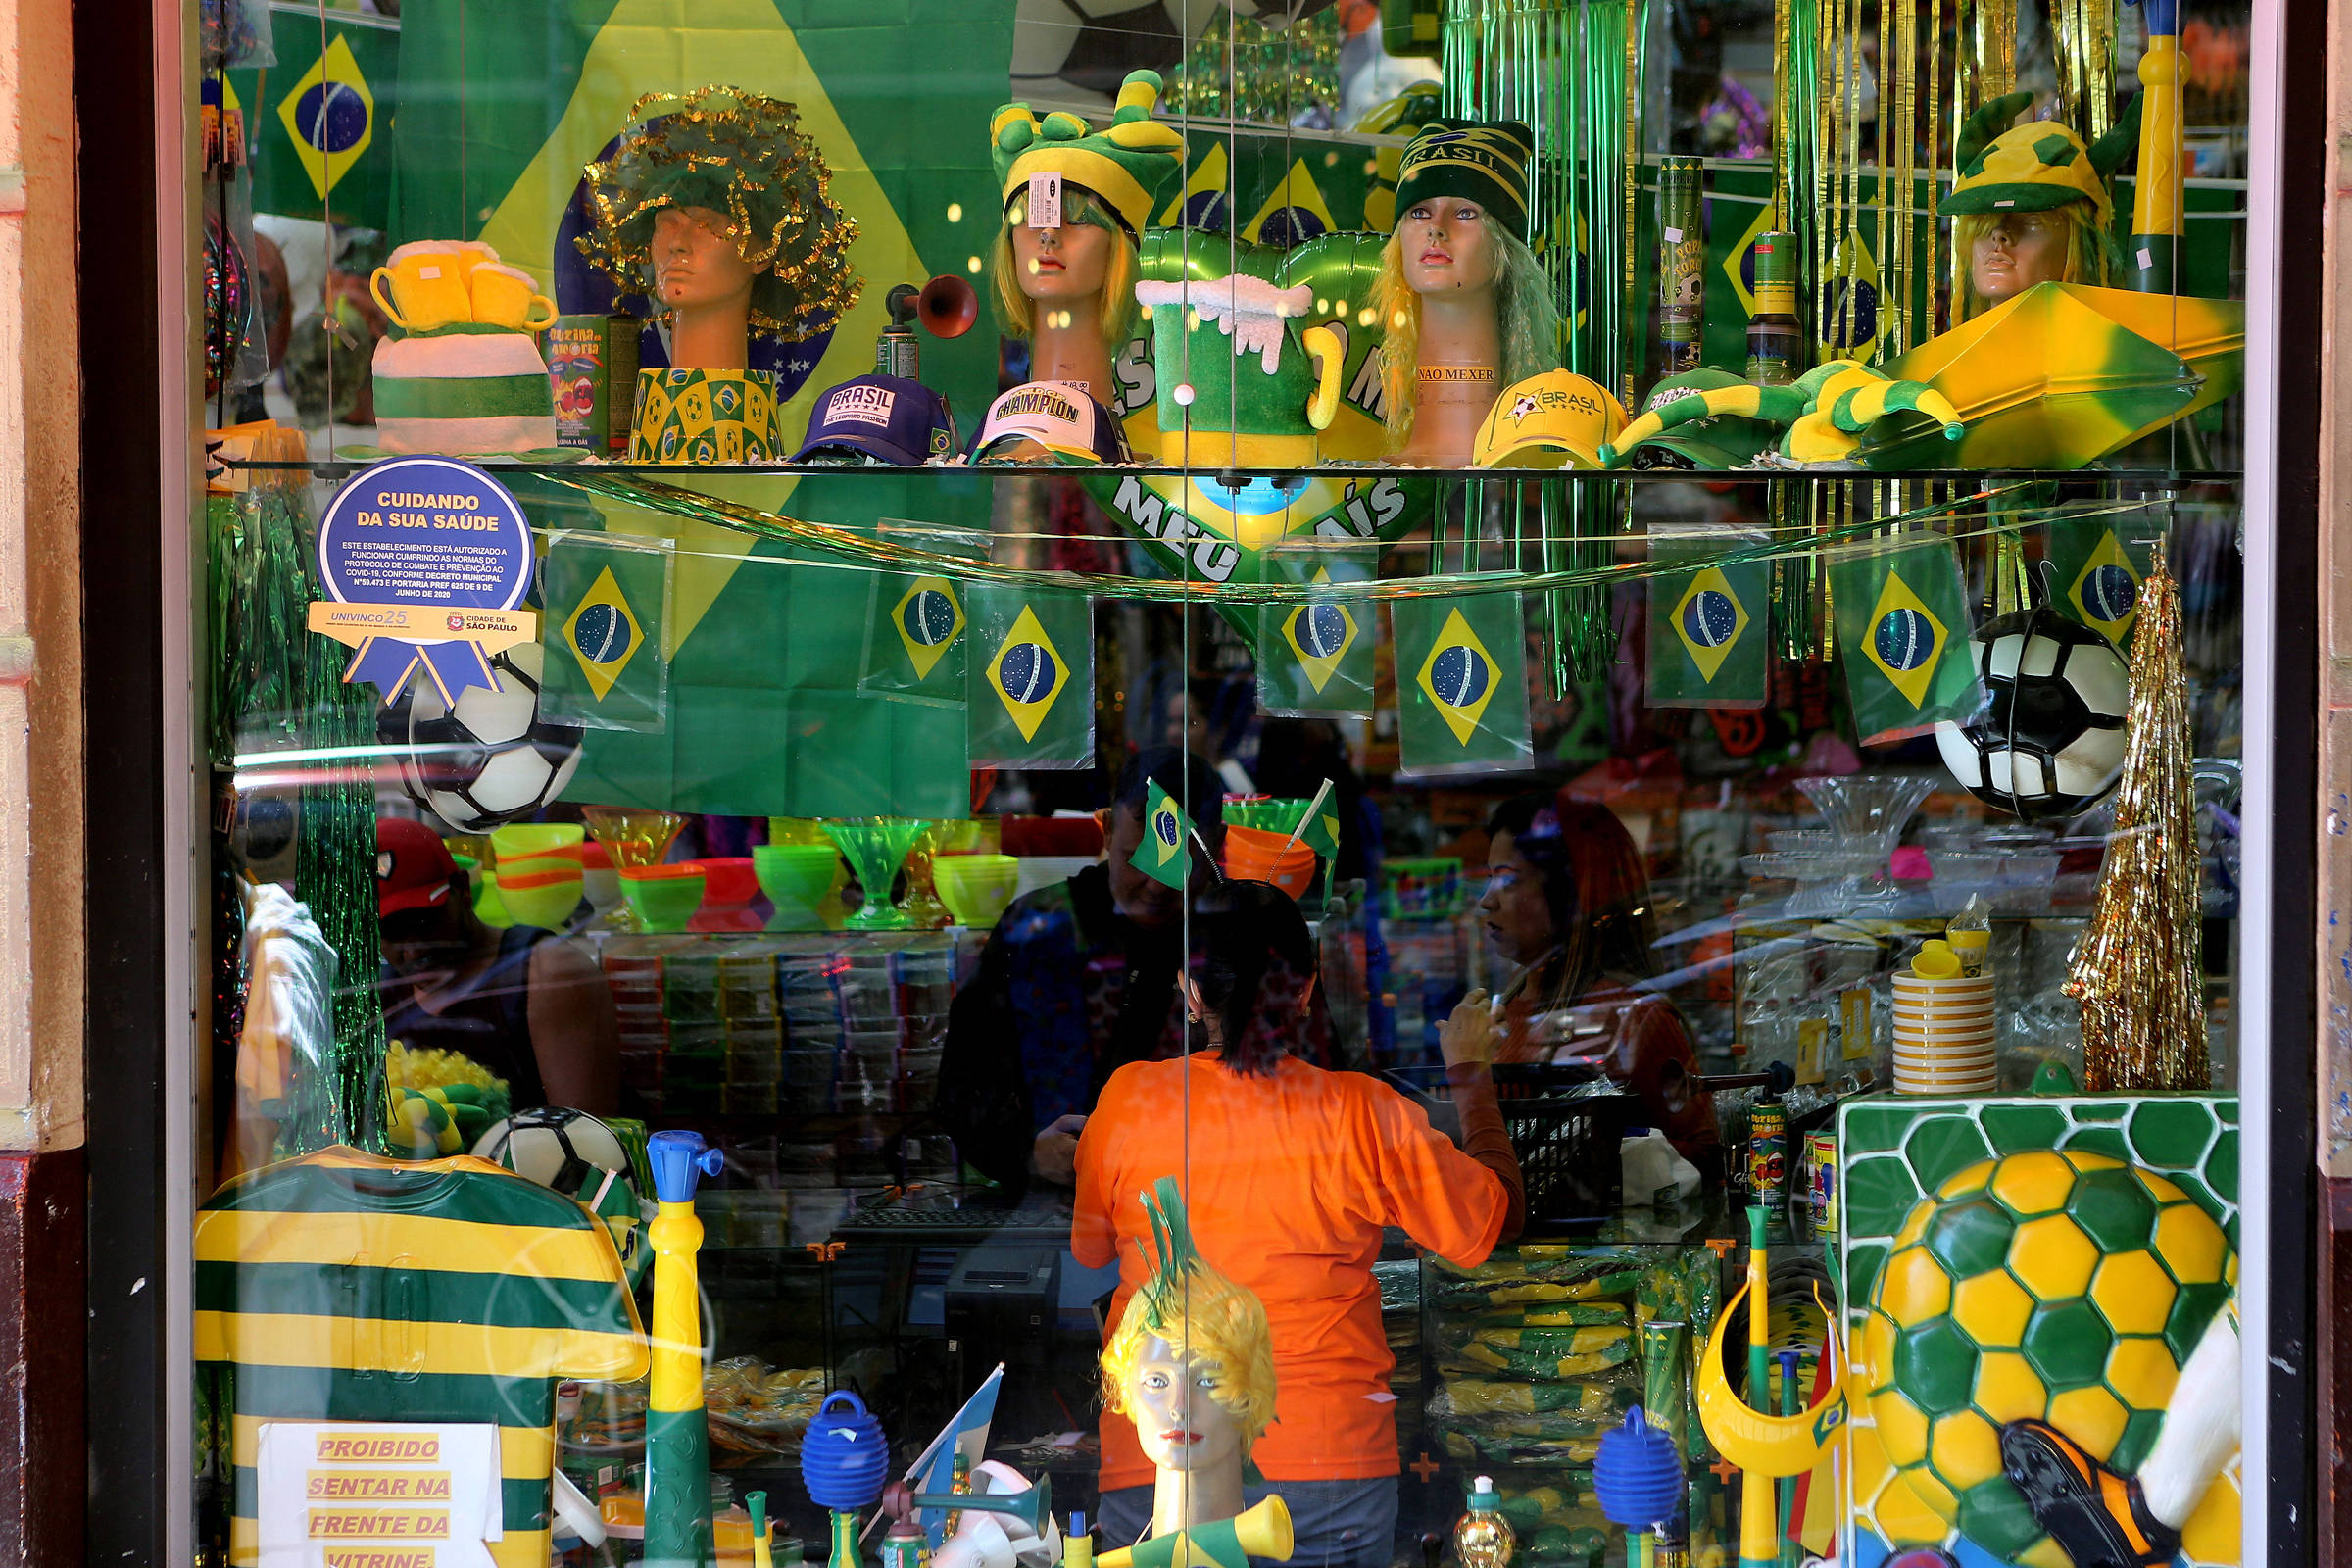 Vai ser feriado nos dias dos jogos do Brasil na Copa do Mundo de